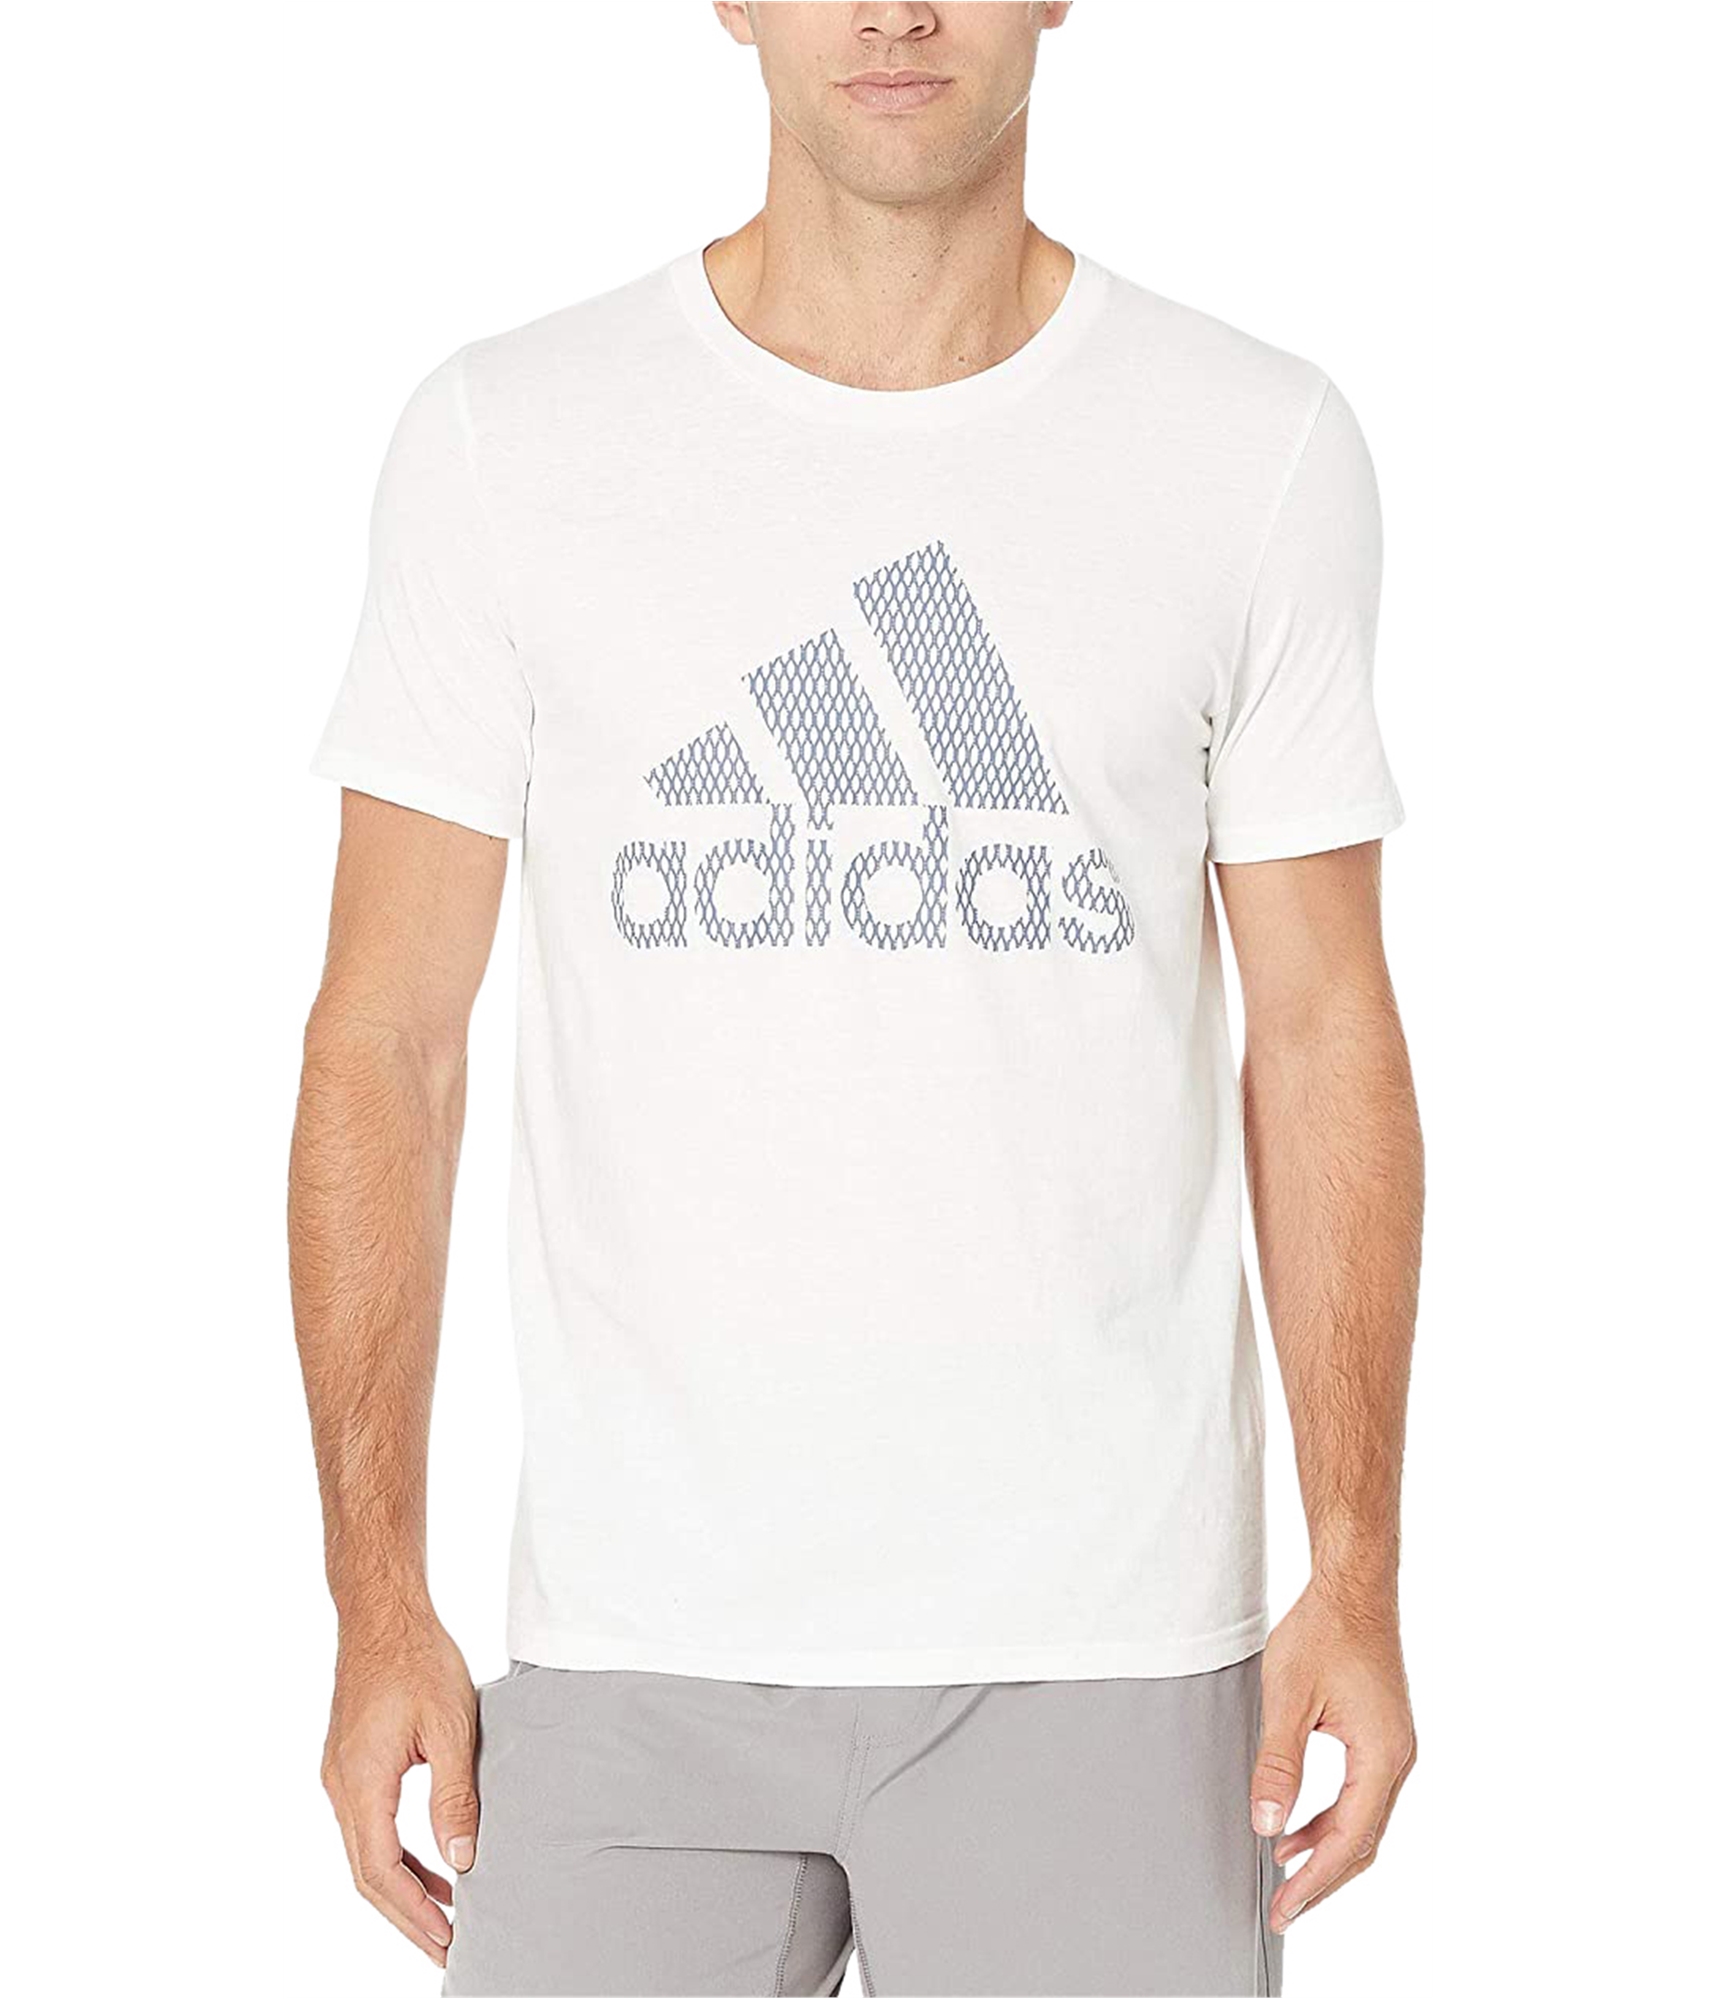 man-wearing-logo-t-shirt